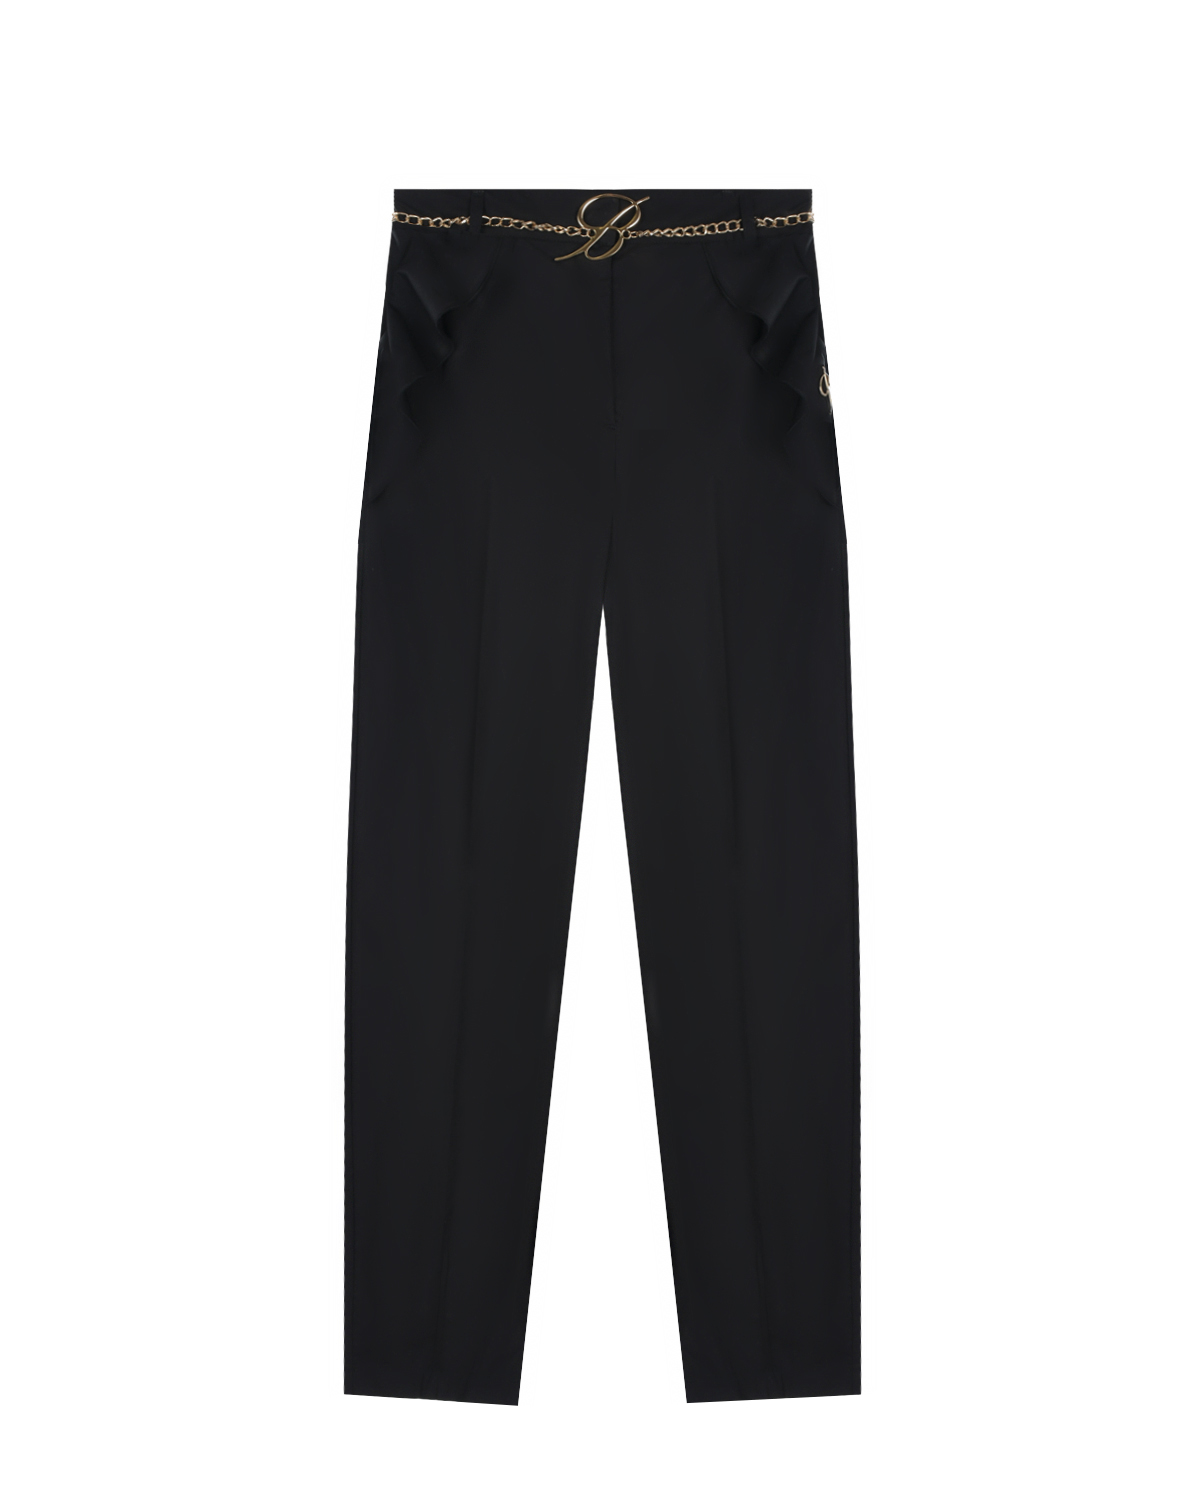 Черные брюки с цепочкой на поясе Miss Blumarine, размер 164, цвет черный